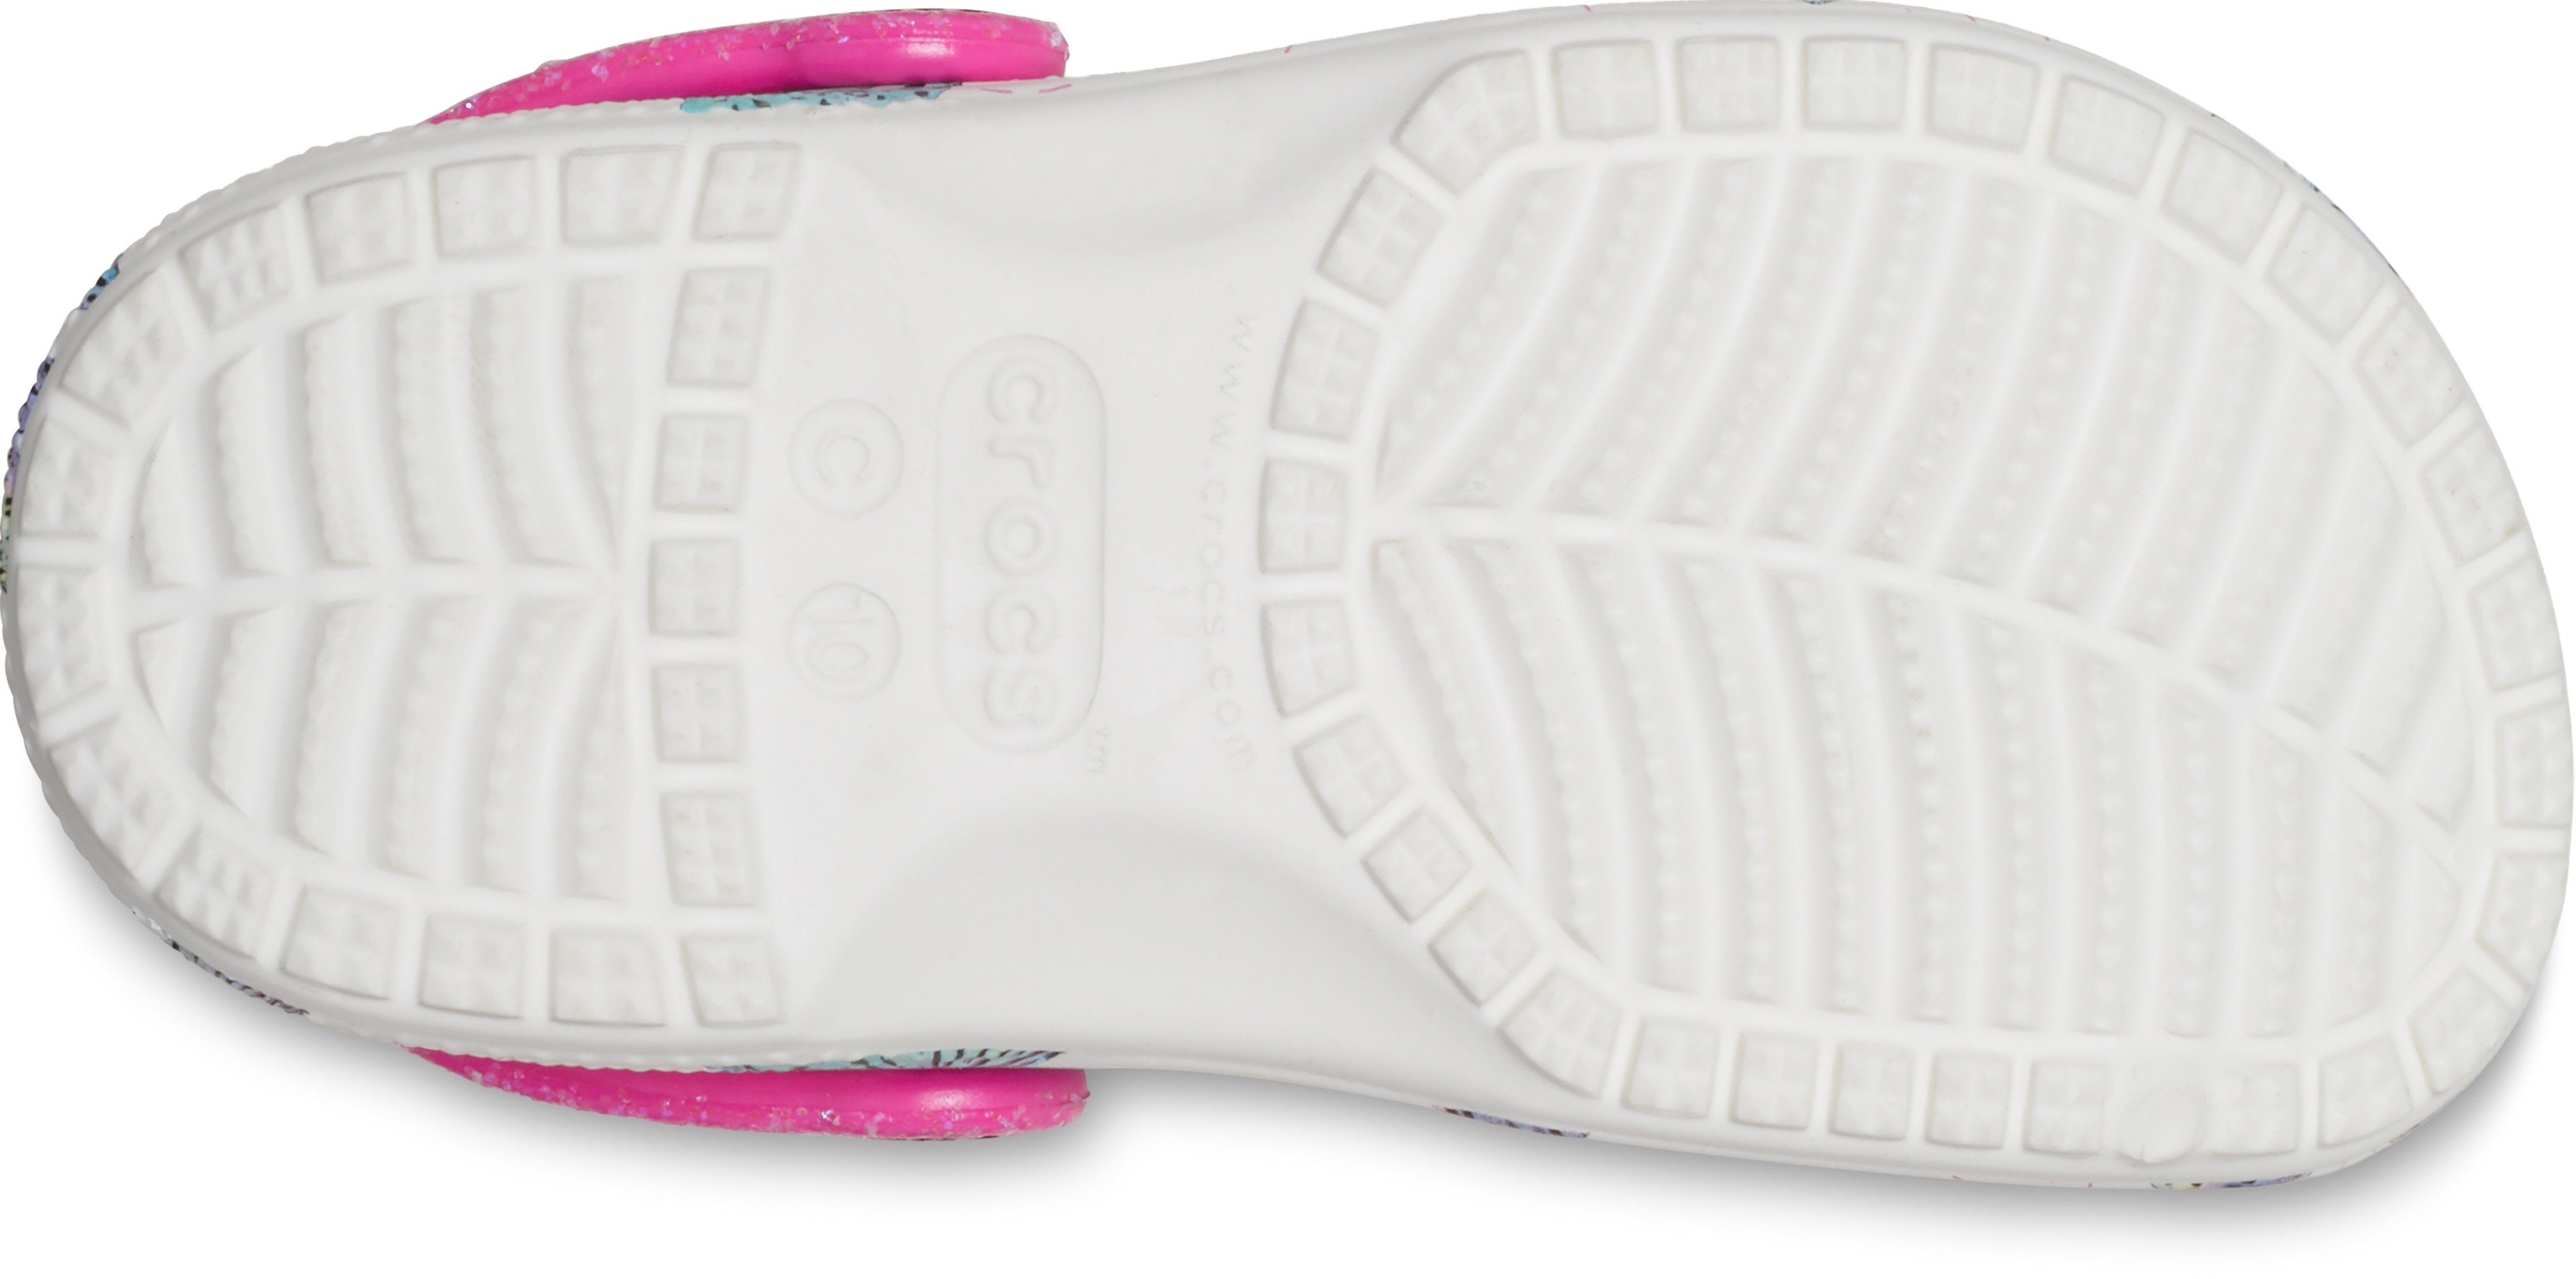 Hausschuh mit Crocs weiß-pink-Schmetterling Fersenriemen